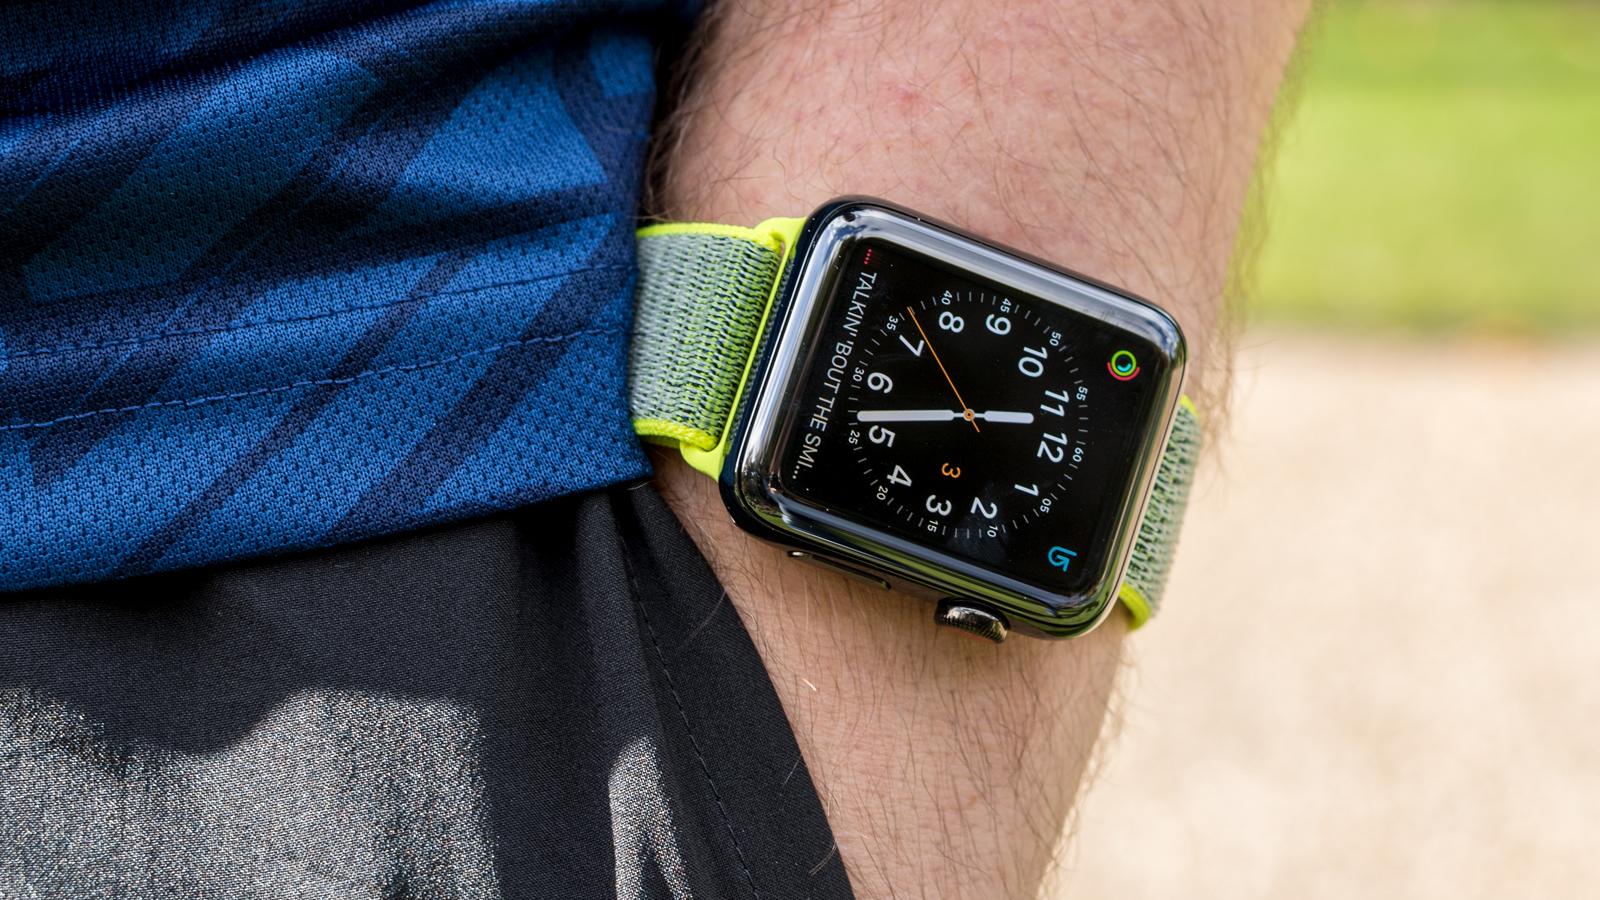 Apple Watch Series 3 wearing